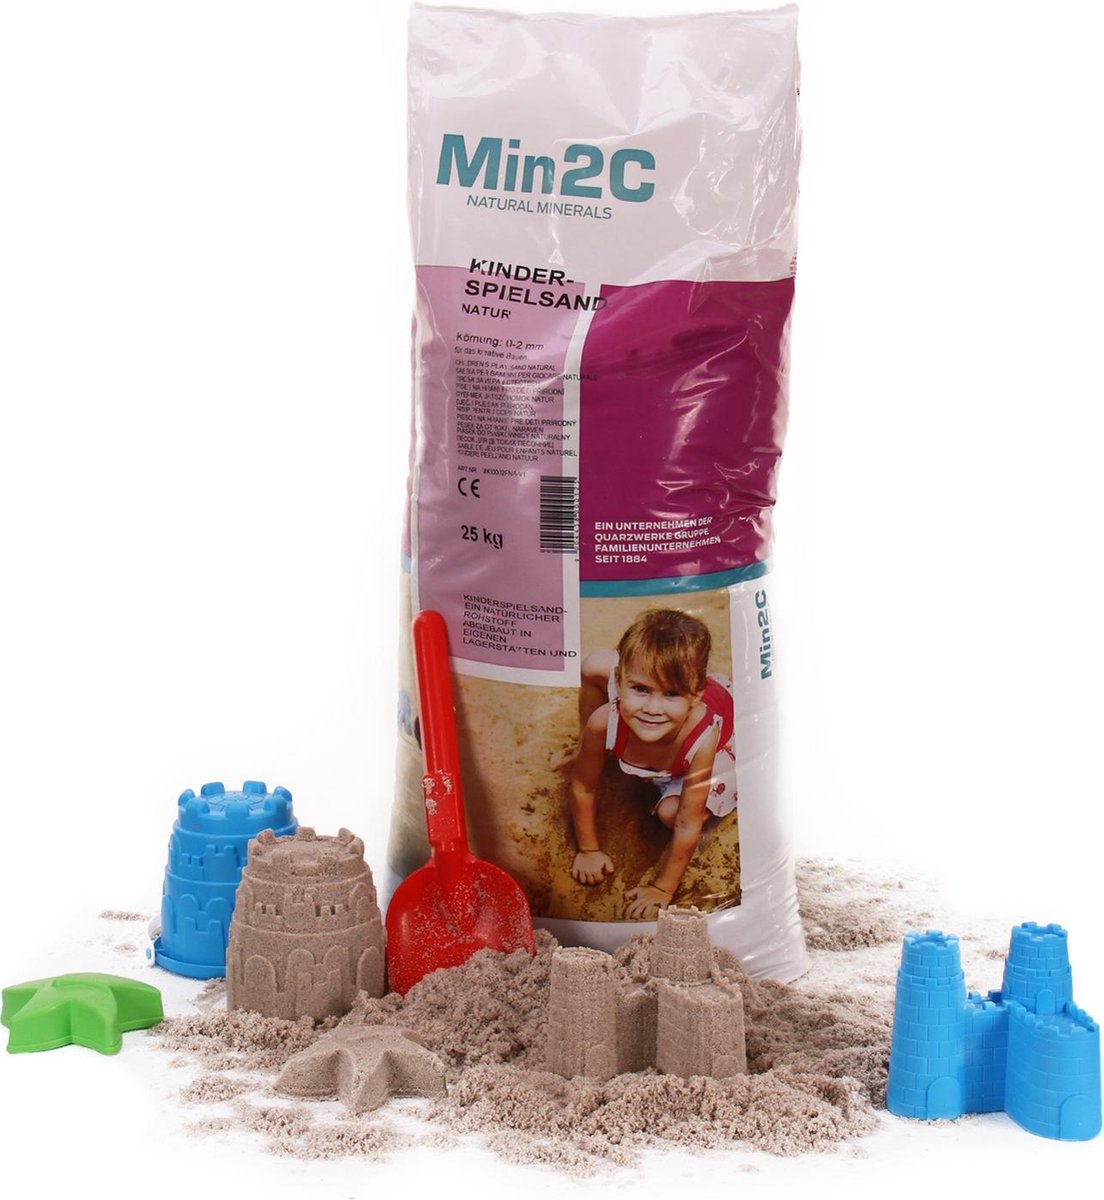 Min2C Kinderspeelzand voor zandbak en decoratie - 25 kg - zandbakzand - speelzand